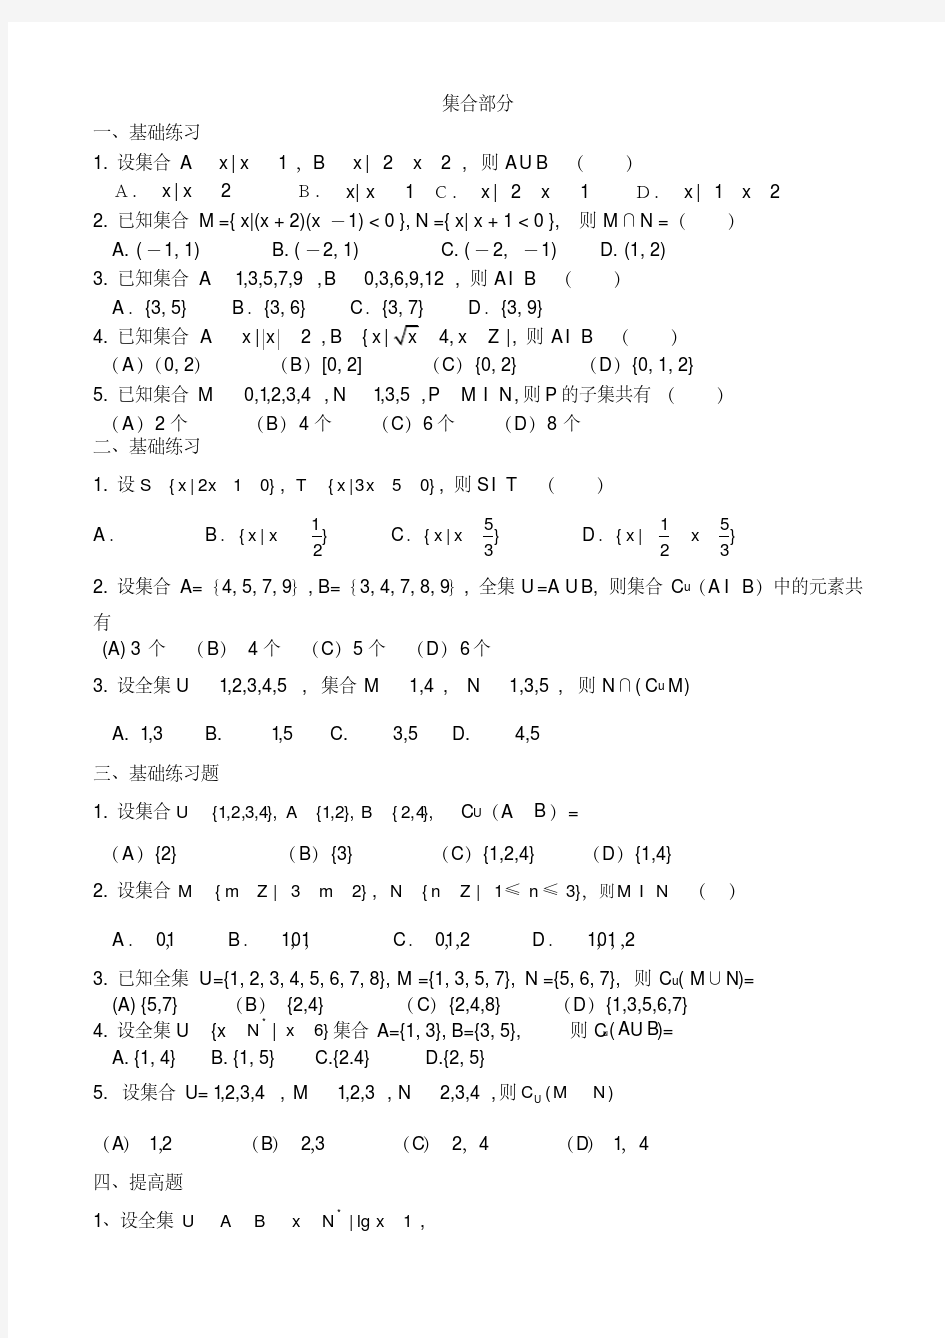 高考文科数学集合习题精选(20200618130349)